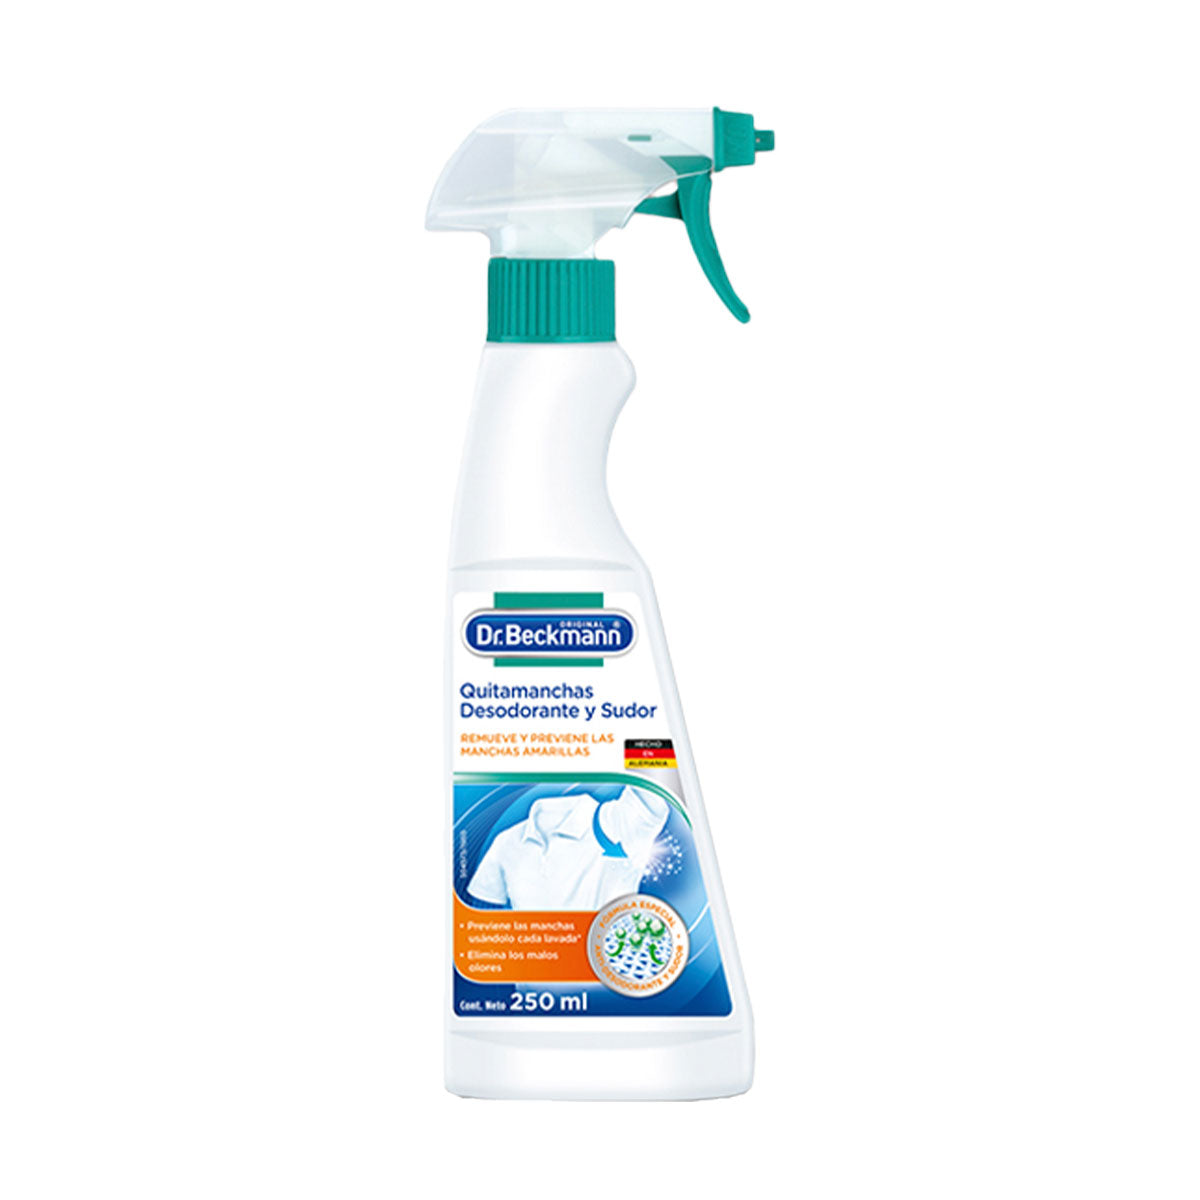 Quitamanchas de Desodorante y Sudor en Spray 250 ml Dr. Beckmann. Producto Alemán Sustentable